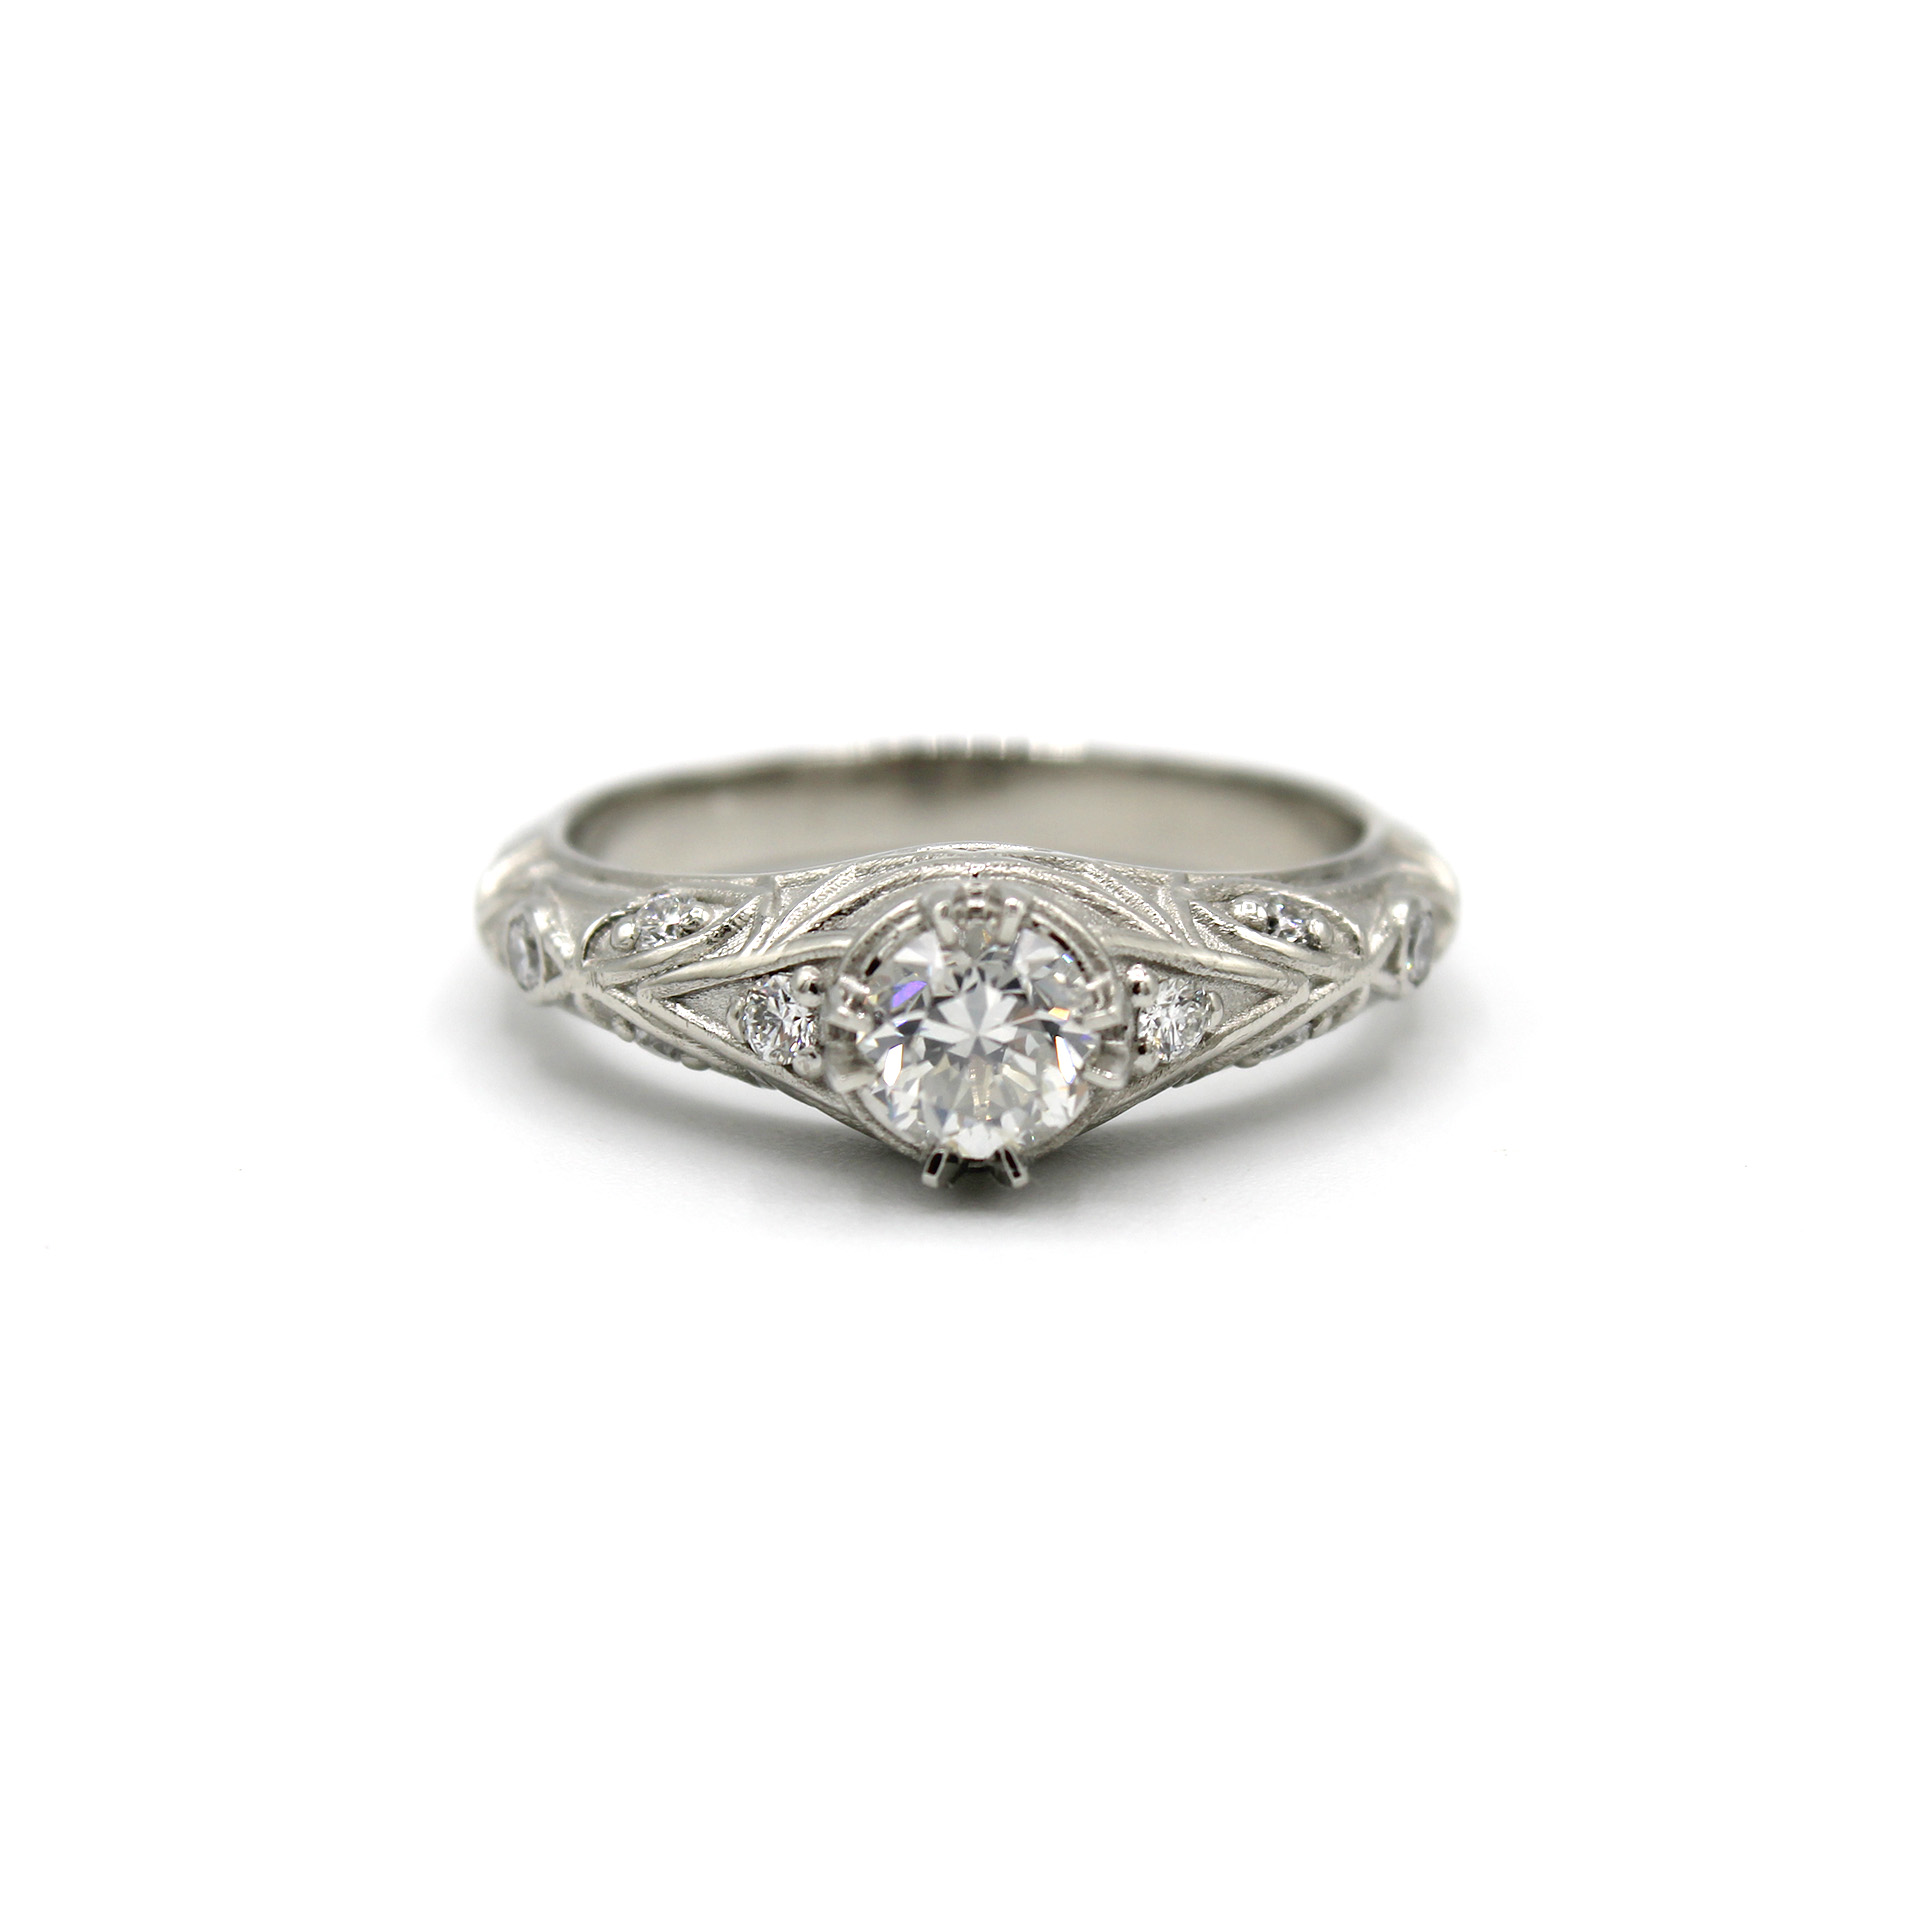 Antique Sapphire, Platinum and Diamond Ring